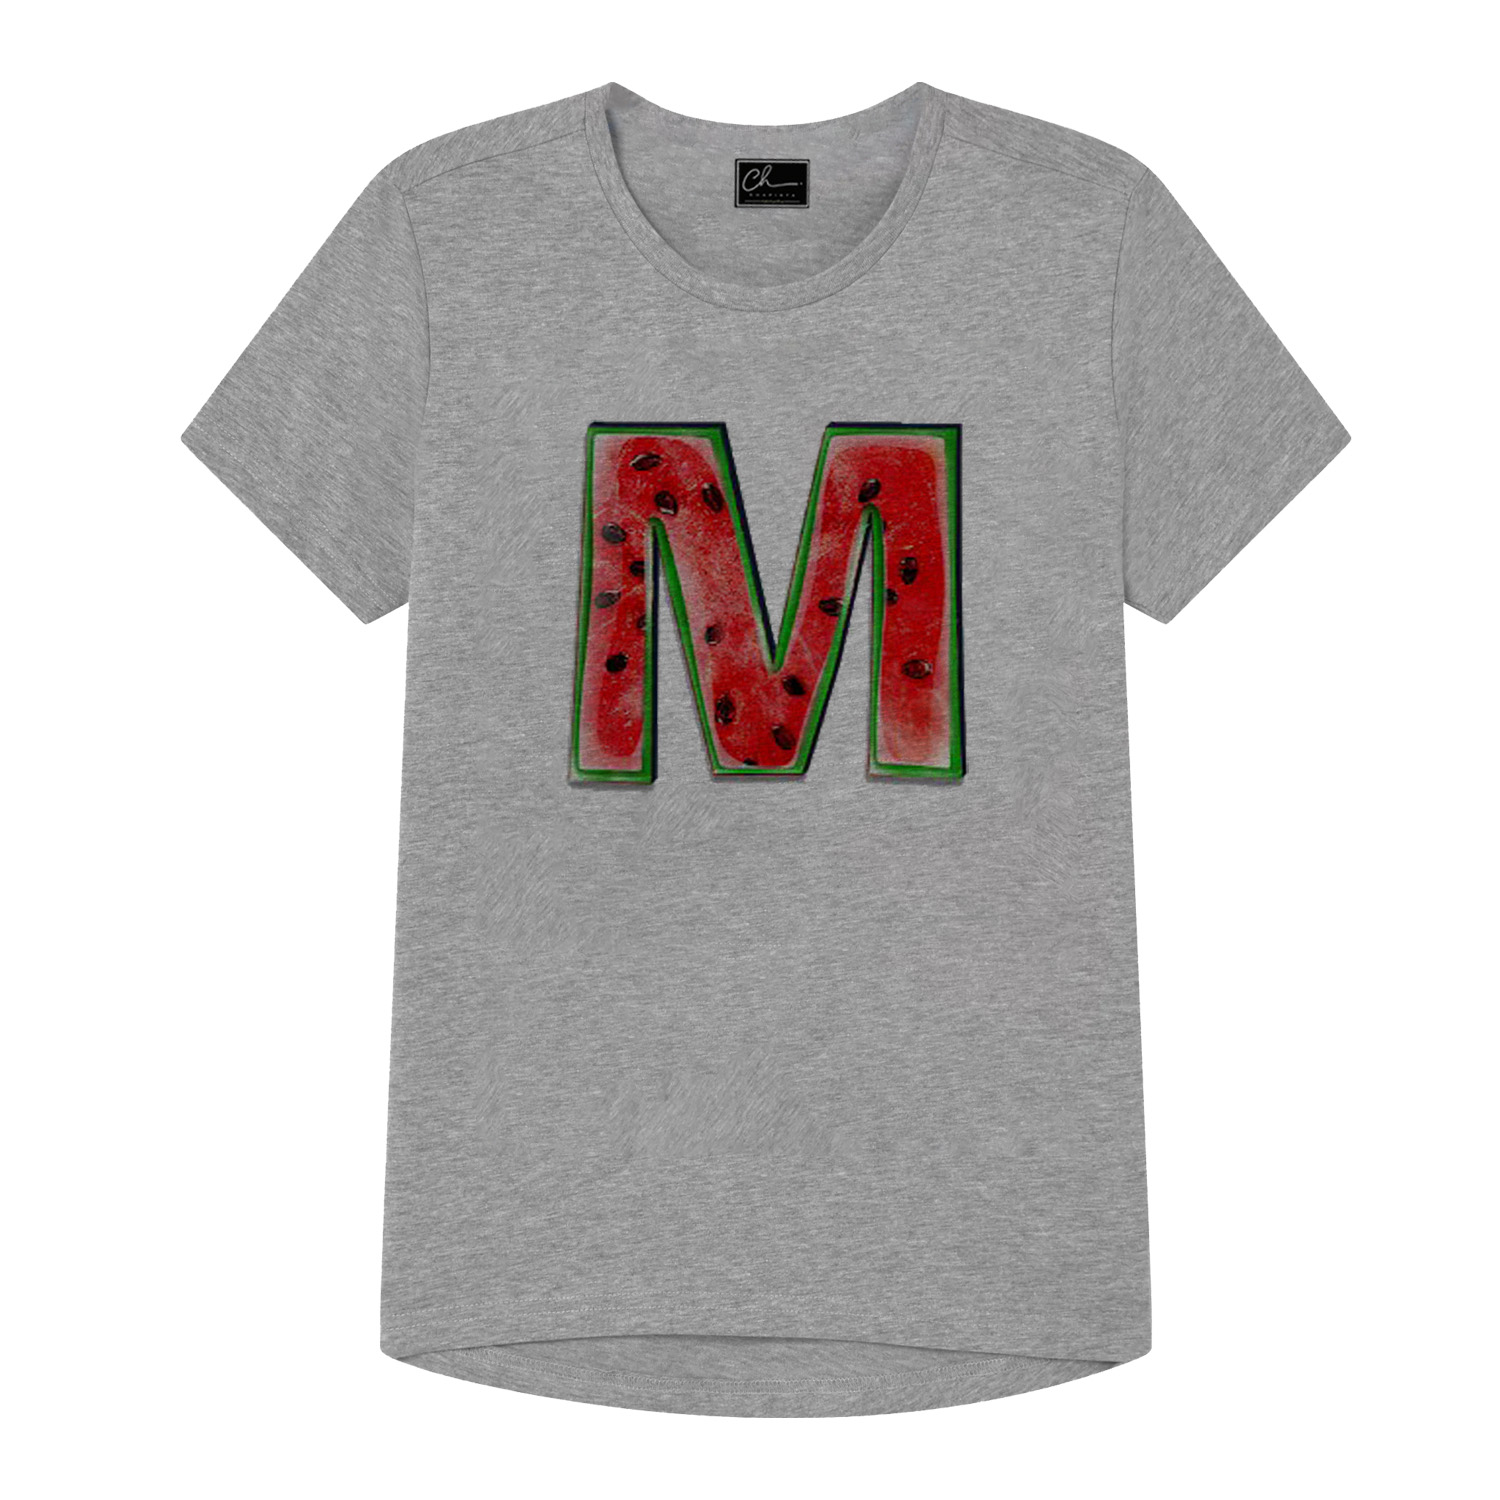 تی شرت دخترانه مدل حرف M کد J68 رنگ طوسی